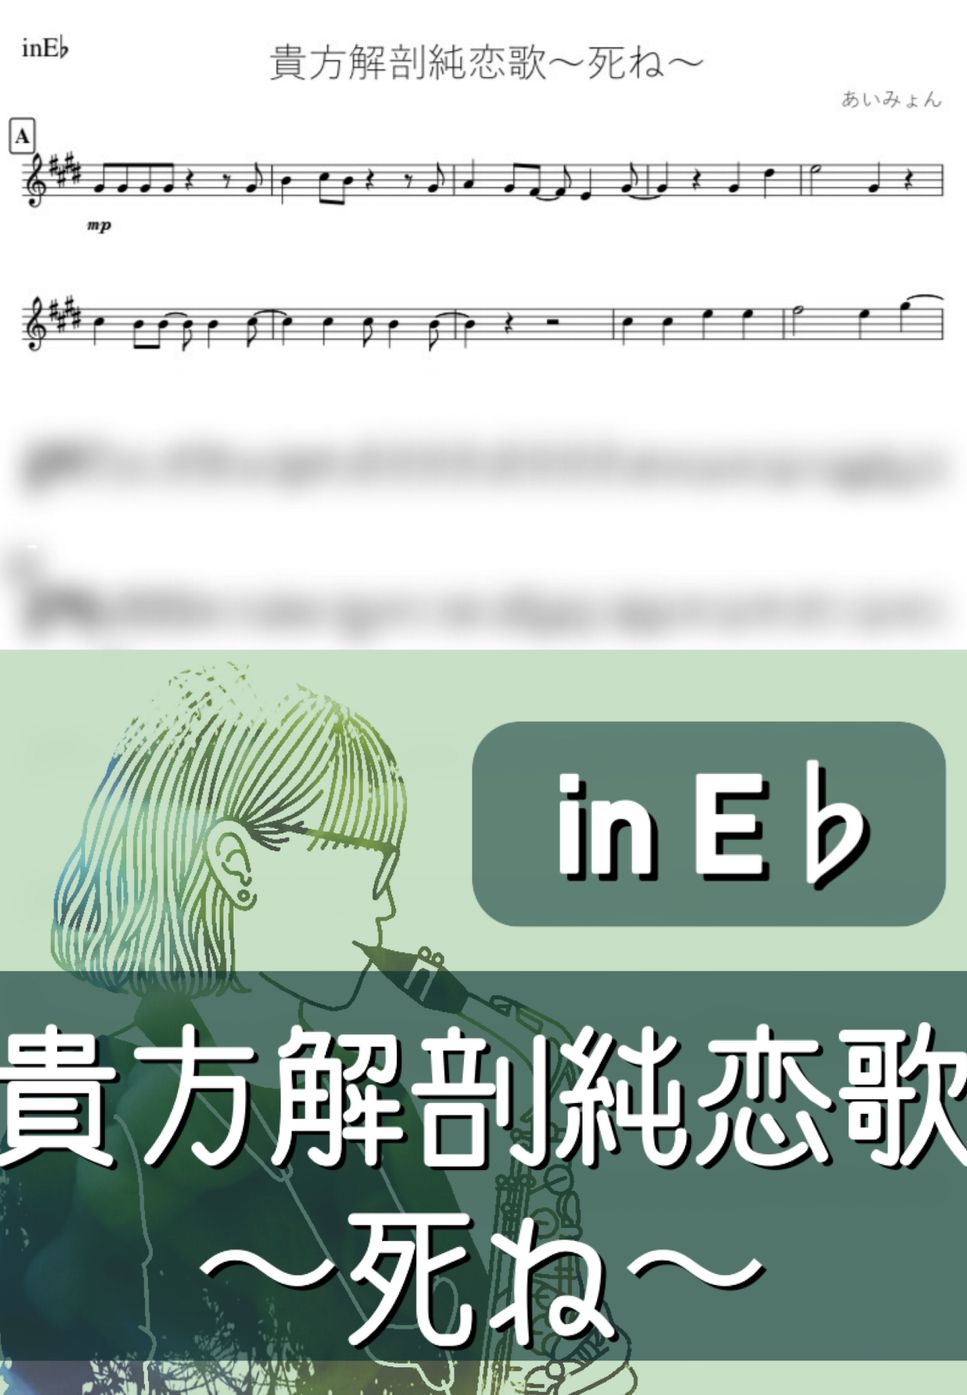 あいみょん - 貴方解剖純恋歌 (E♭) by kanamusic